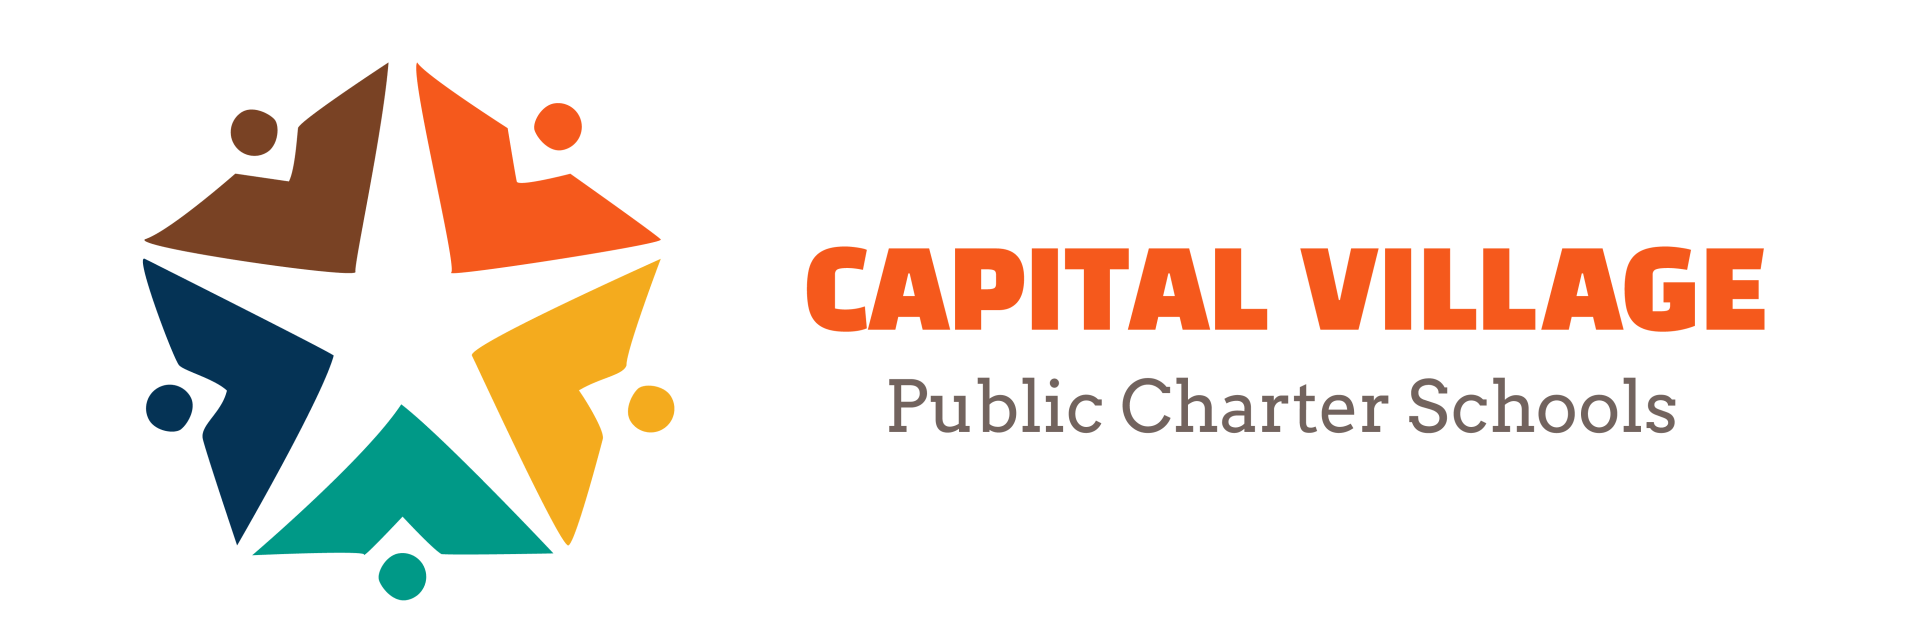 Capital Village Public Charter Schools, Enrollment